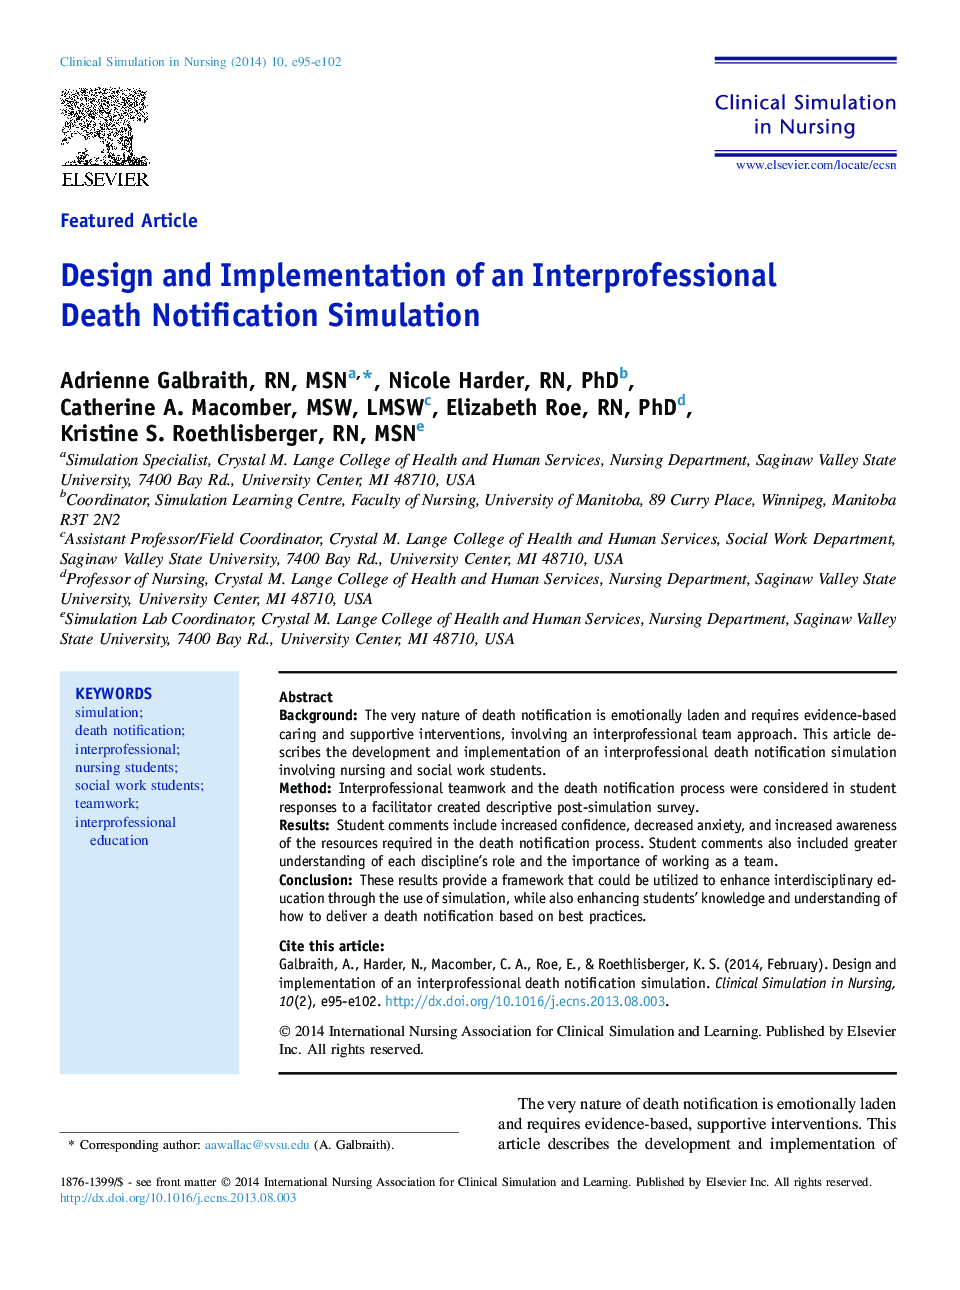 طراحی و پیاده سازی یک شایستگی اعلان مرگ در بین حرفه ای 